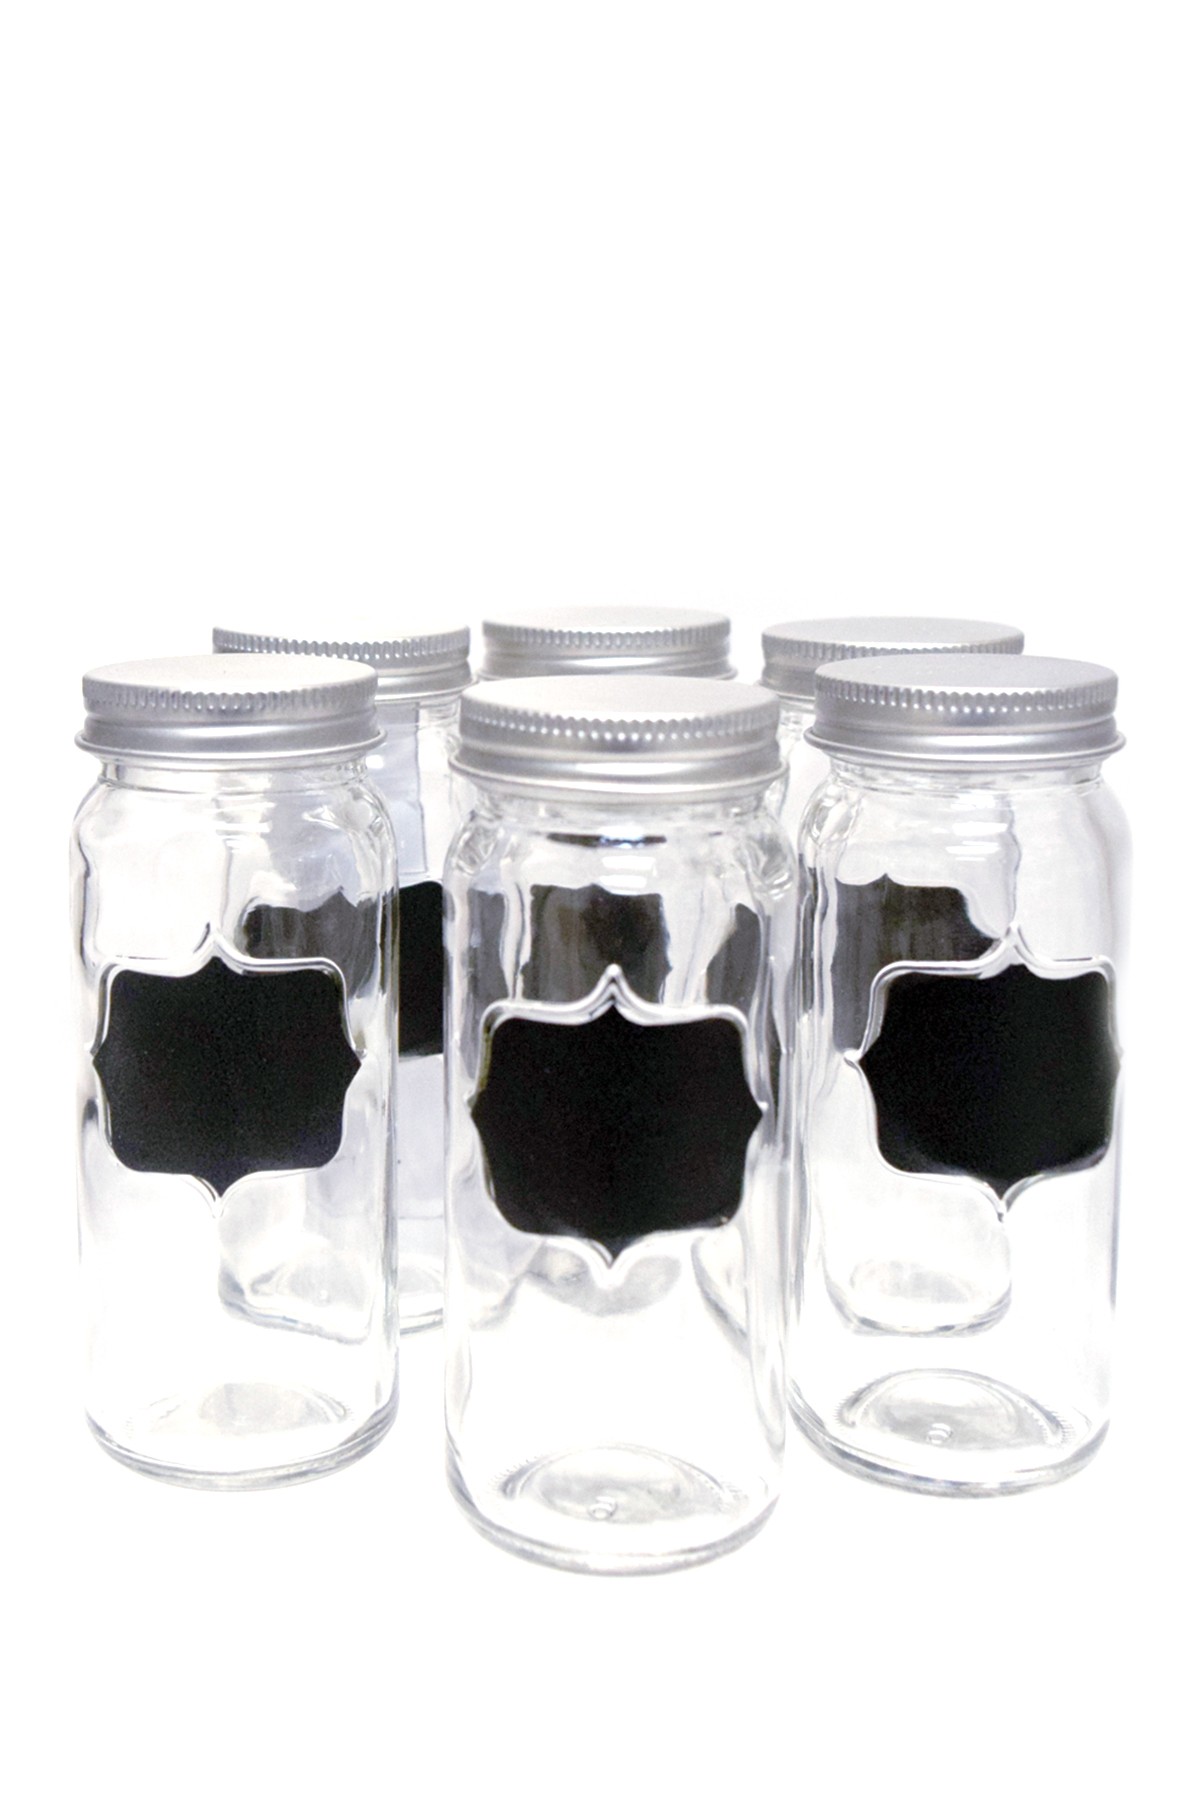 Euroware Chalkboard Spice Jars - Set of 6